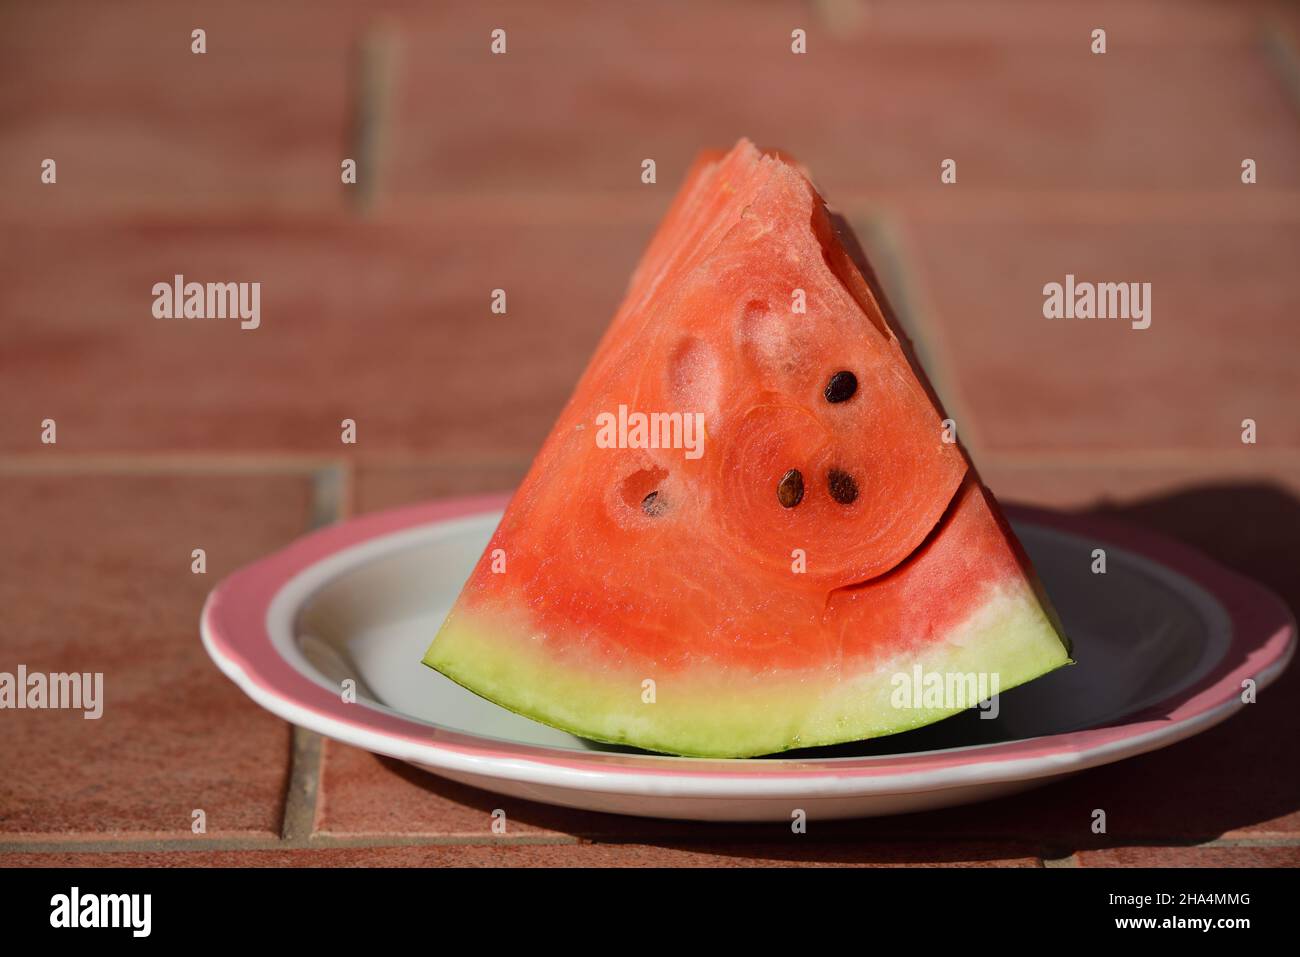 Ein Stück frische rote Wassermelone, mit einer grünen Schale, auf einem Teller zum Essen angeordnet Stockfoto